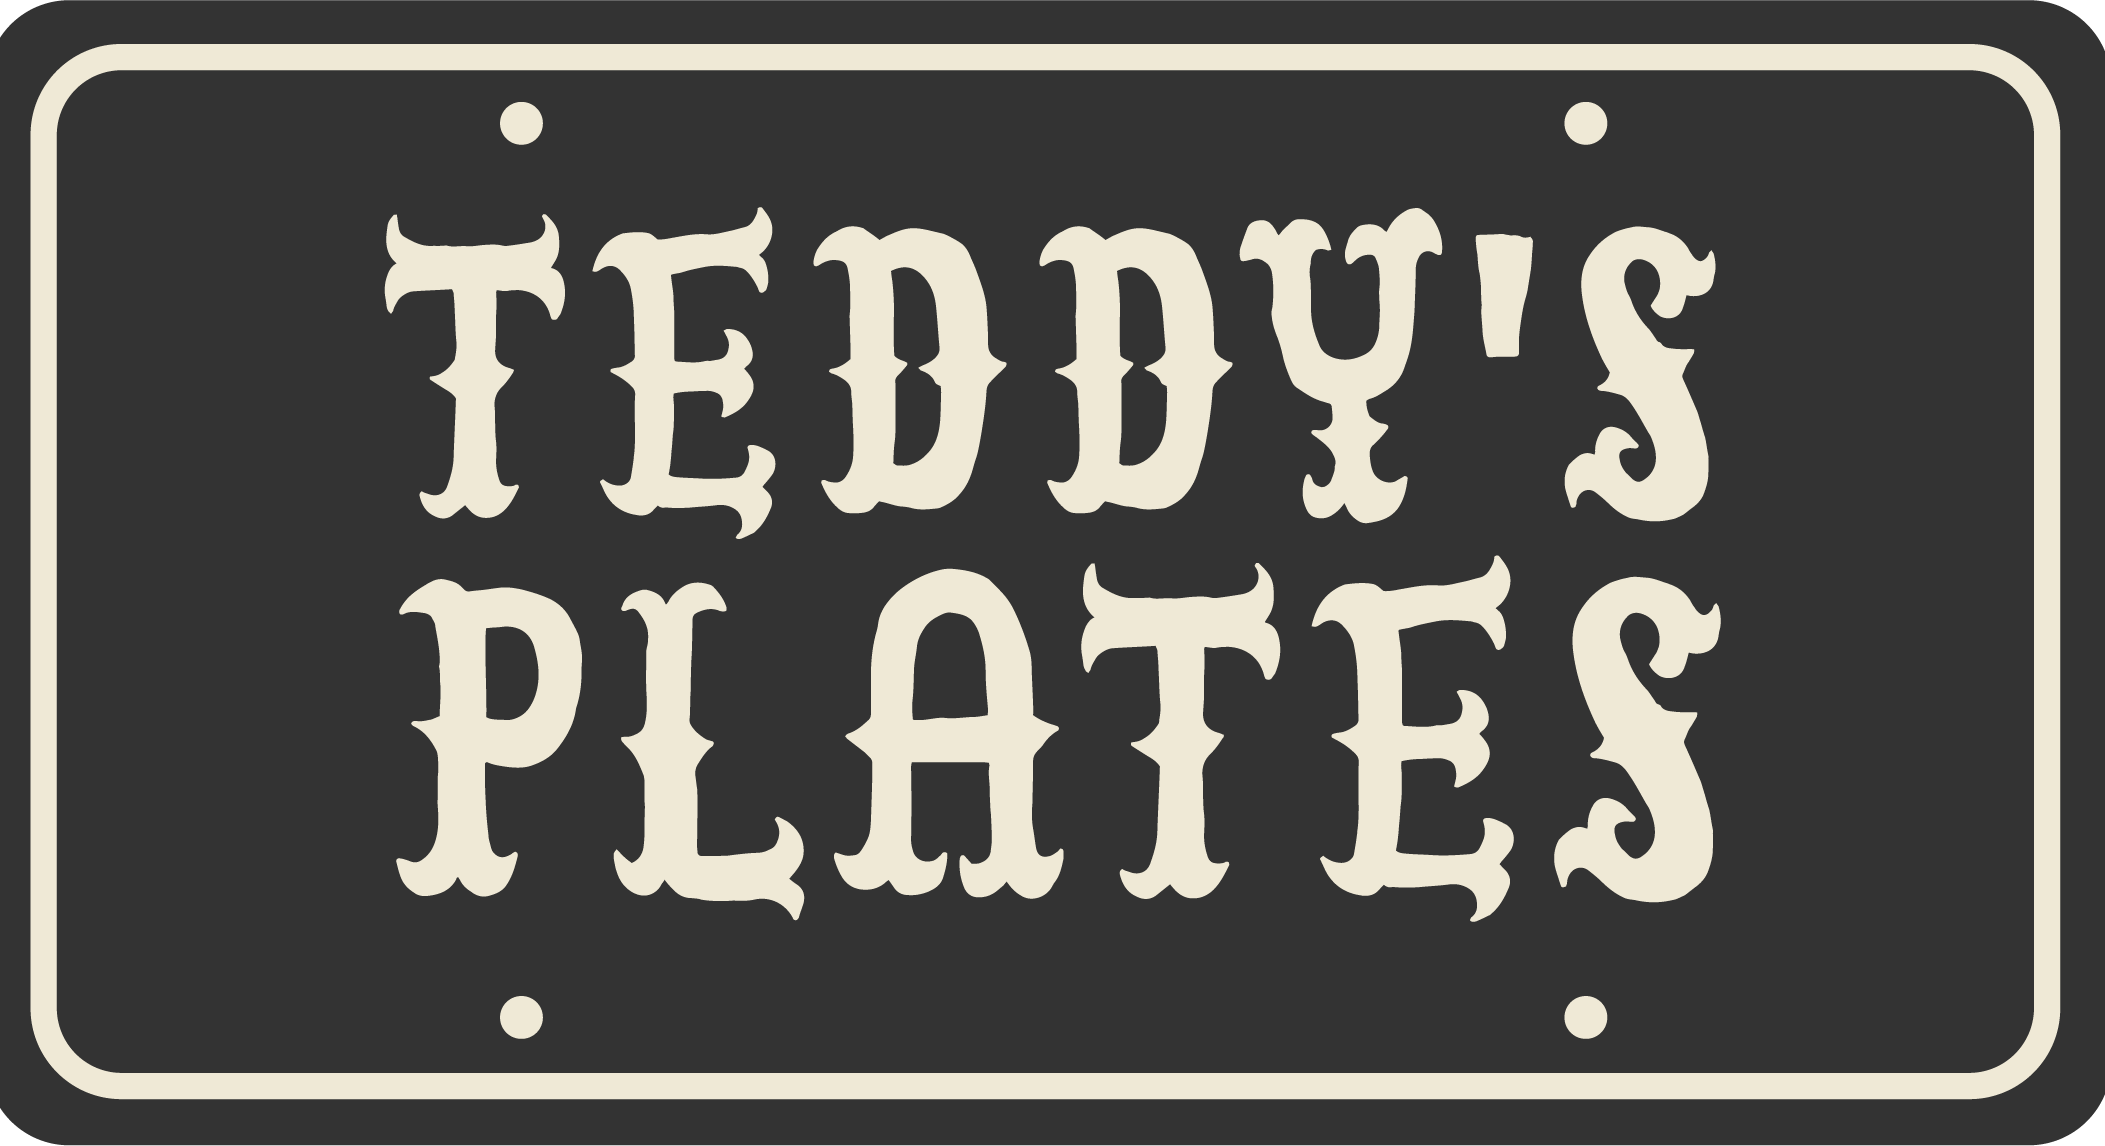 Teddy's Plates